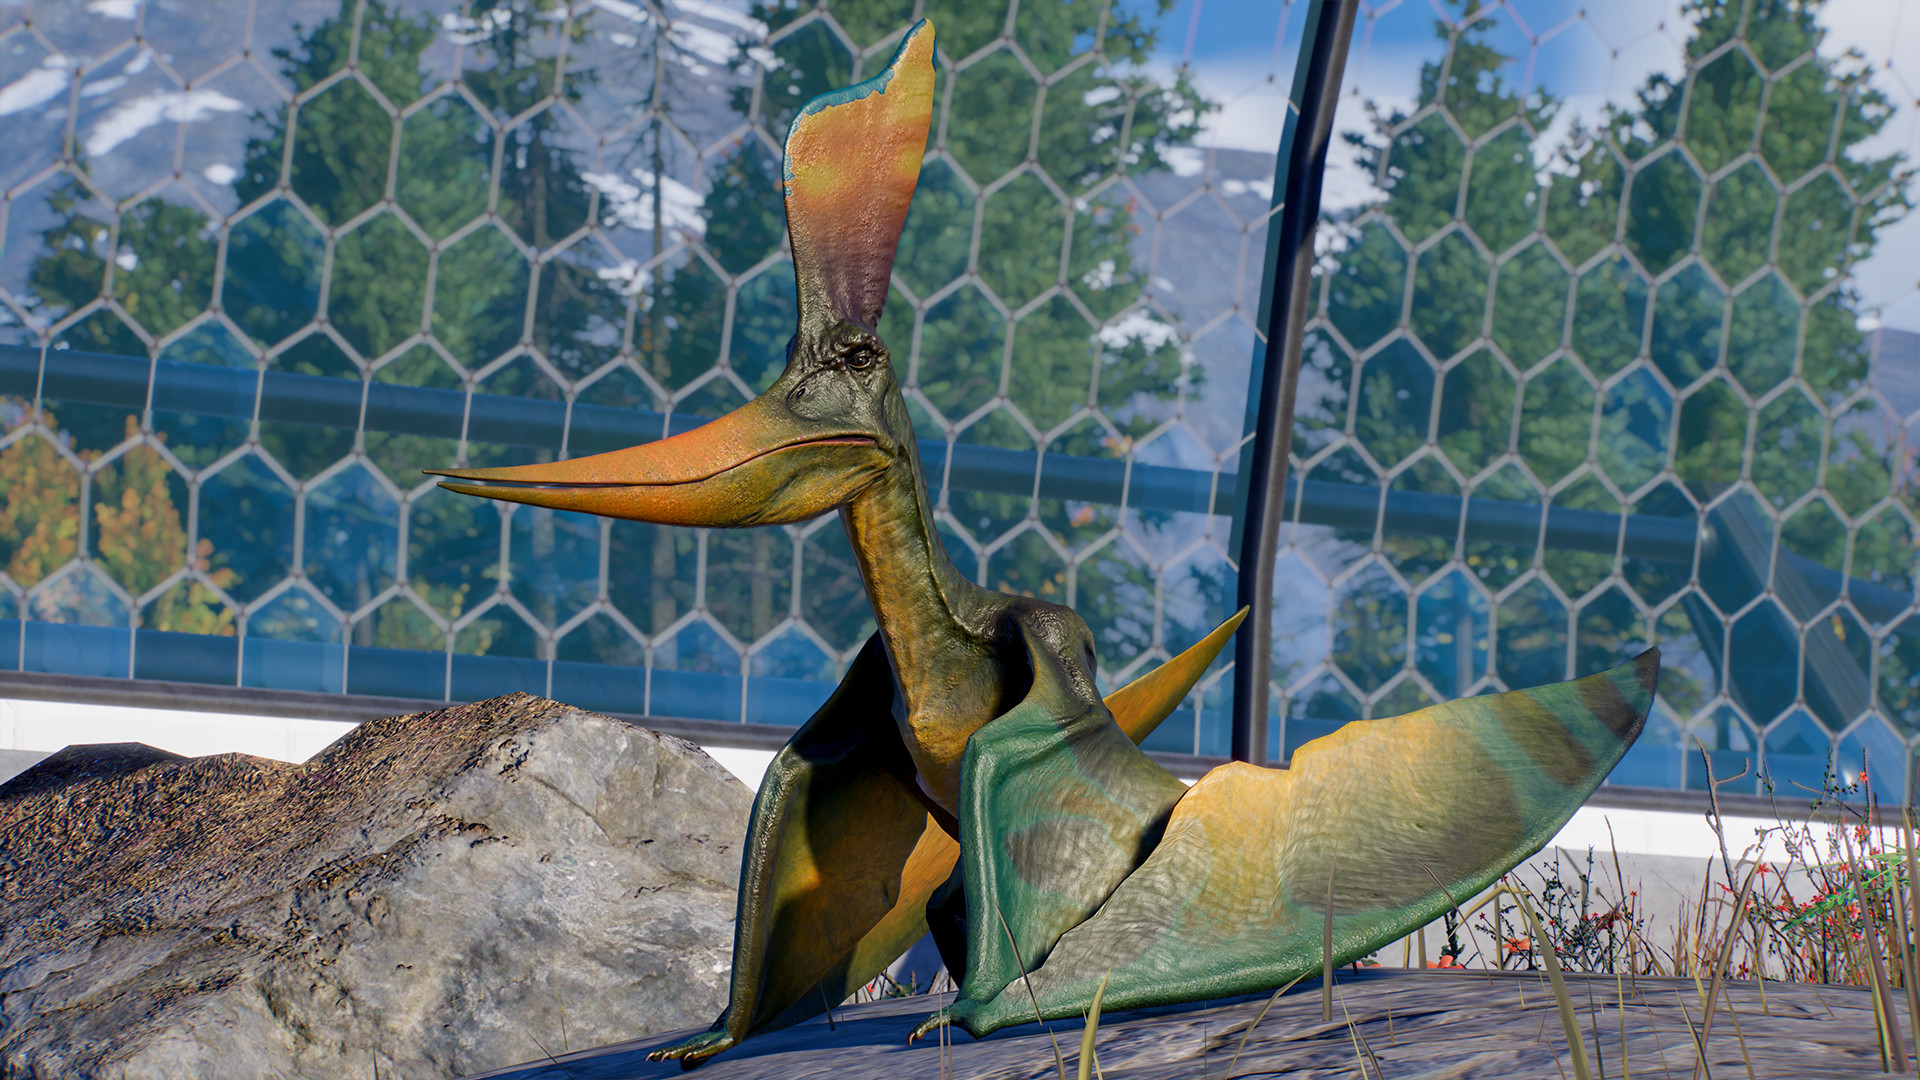 Jurassic World Evolution 2 - Deluxe Upgrade Pack DLC Steam Altergift